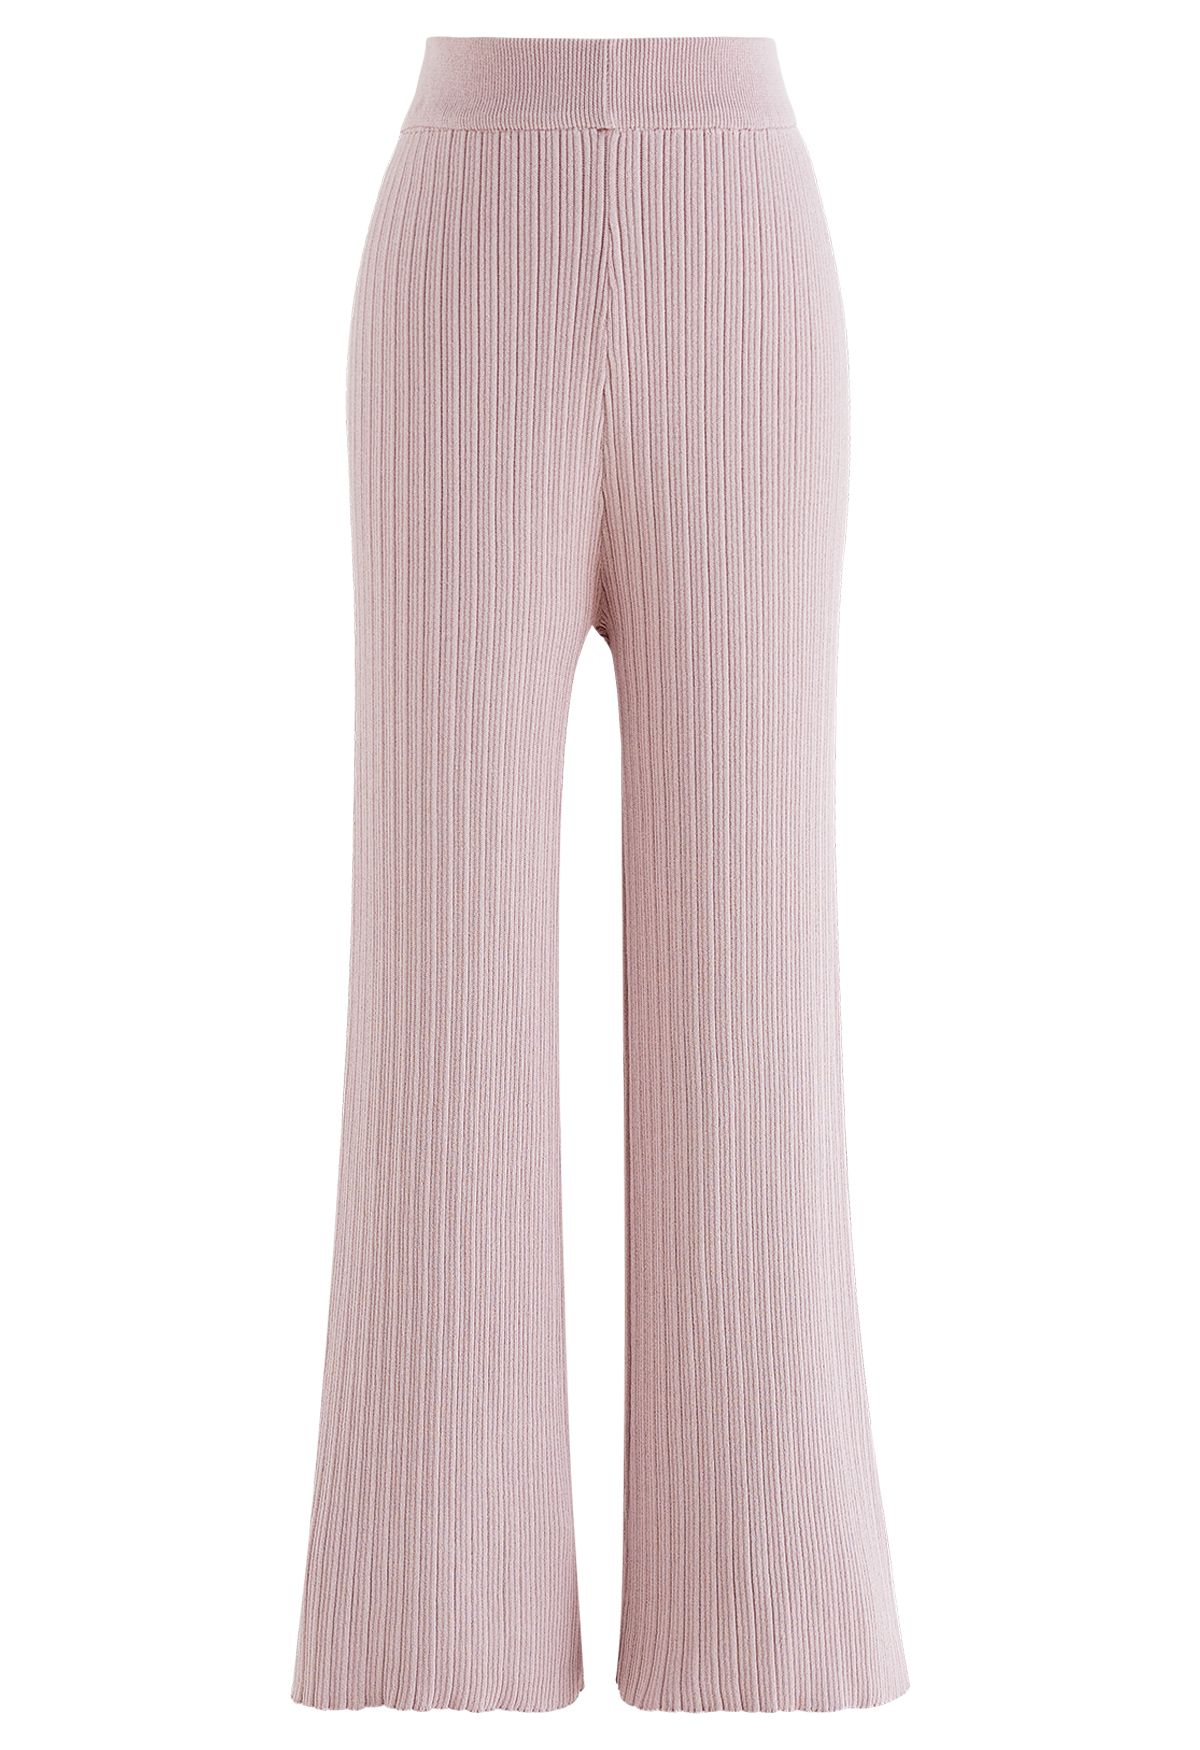 Conjunto de pantalón y top de punto con cordón en la manga en rosa polvoriento